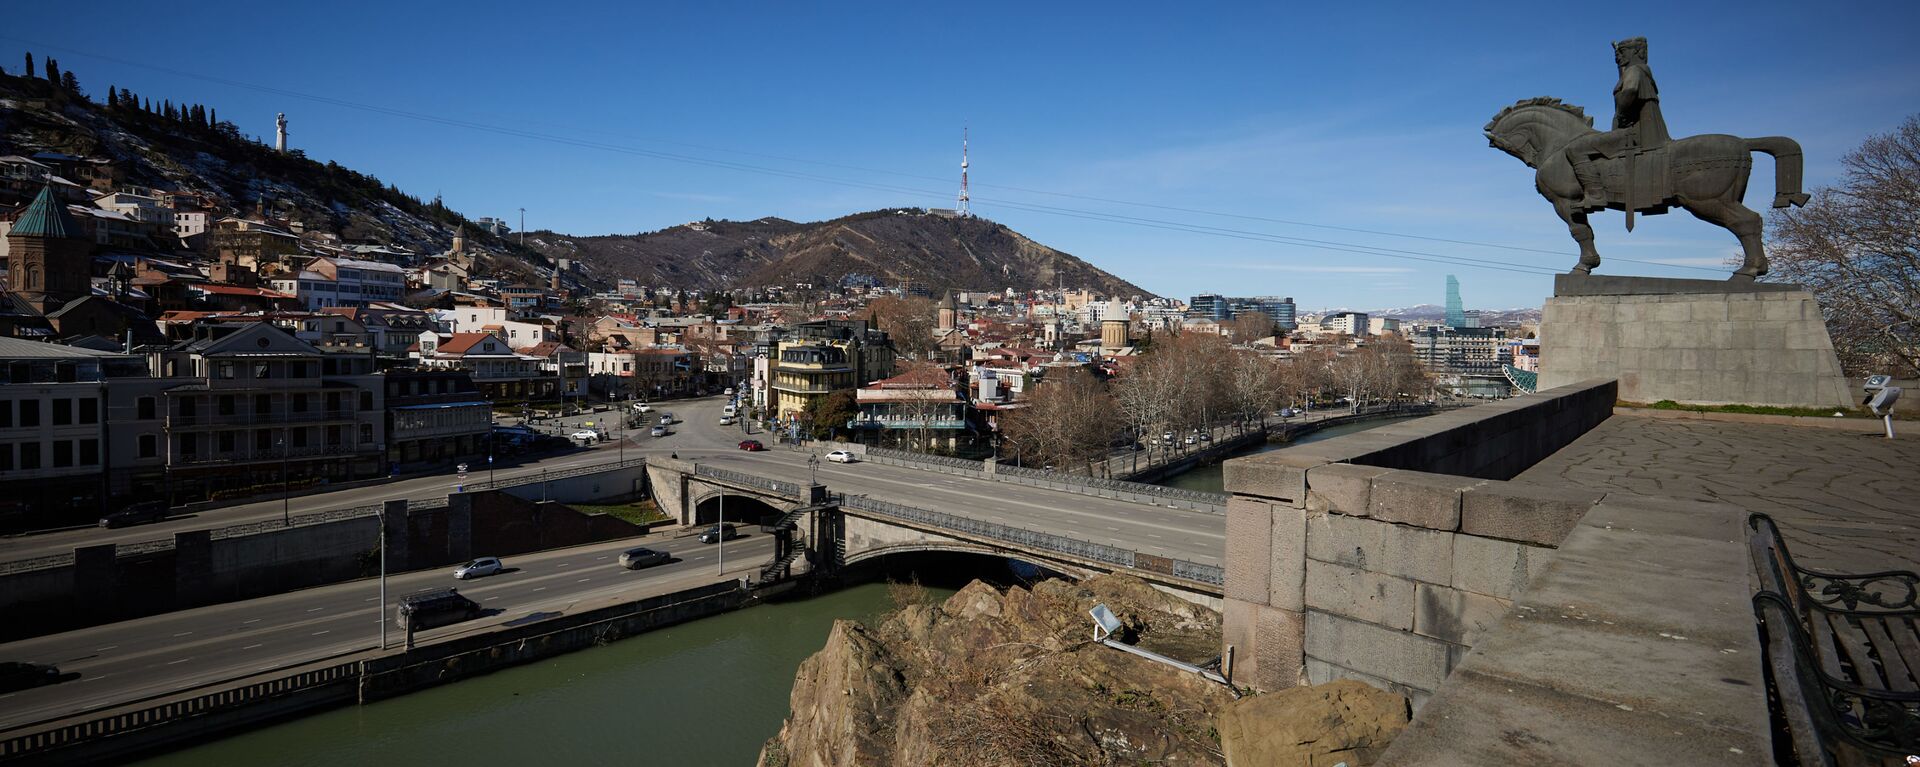 Вид на город Тбилиси - памятник Вахтангу Горгасали и Метехский мост - Sputnik Грузия, 1920, 03.03.2021